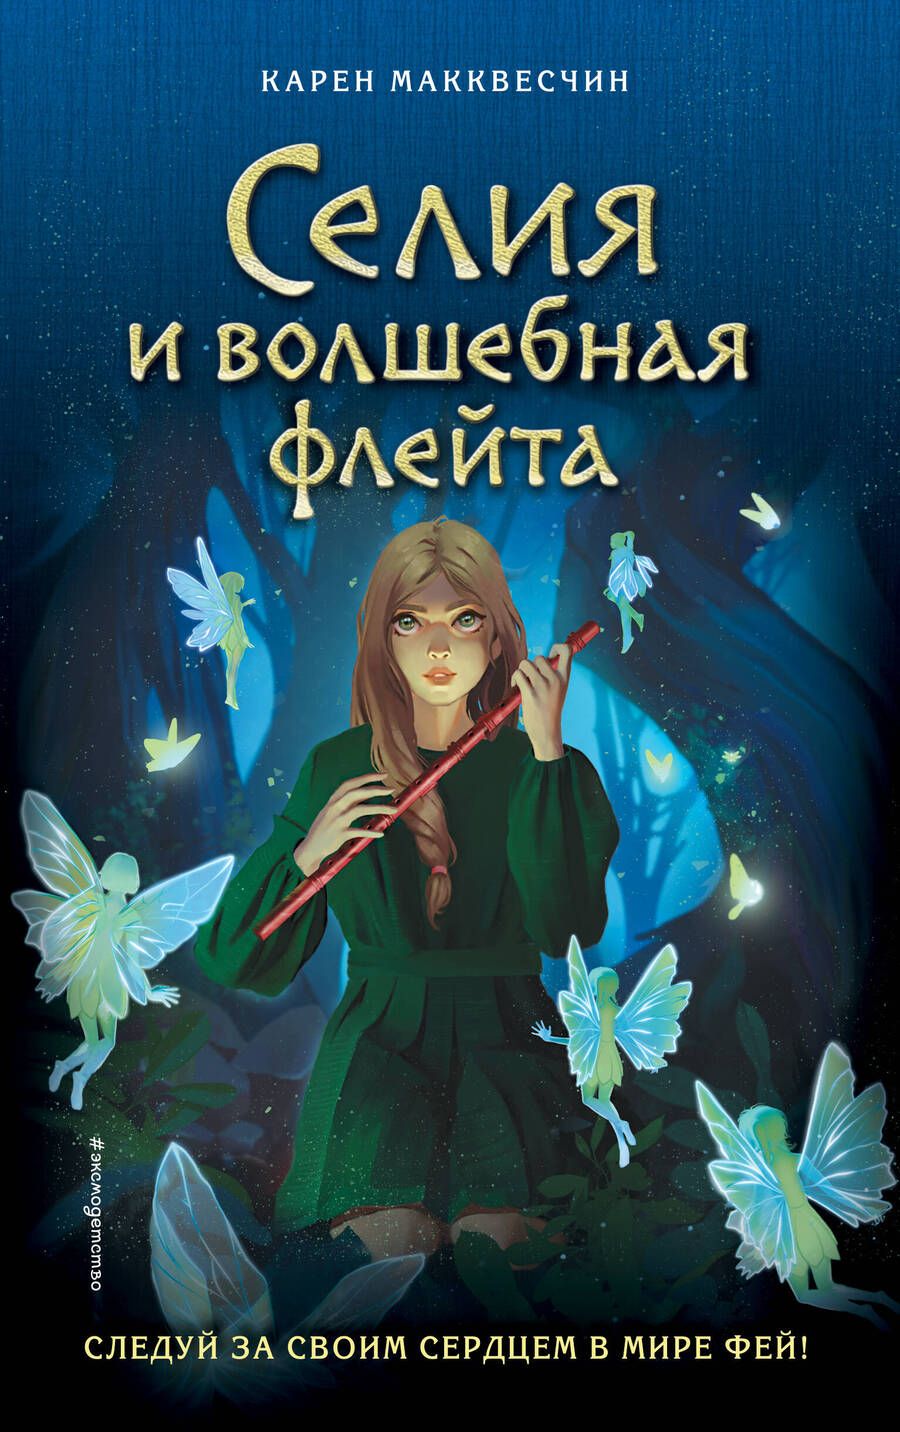 Обложка книги "Макквесчин: Селия и волшебная флейта"